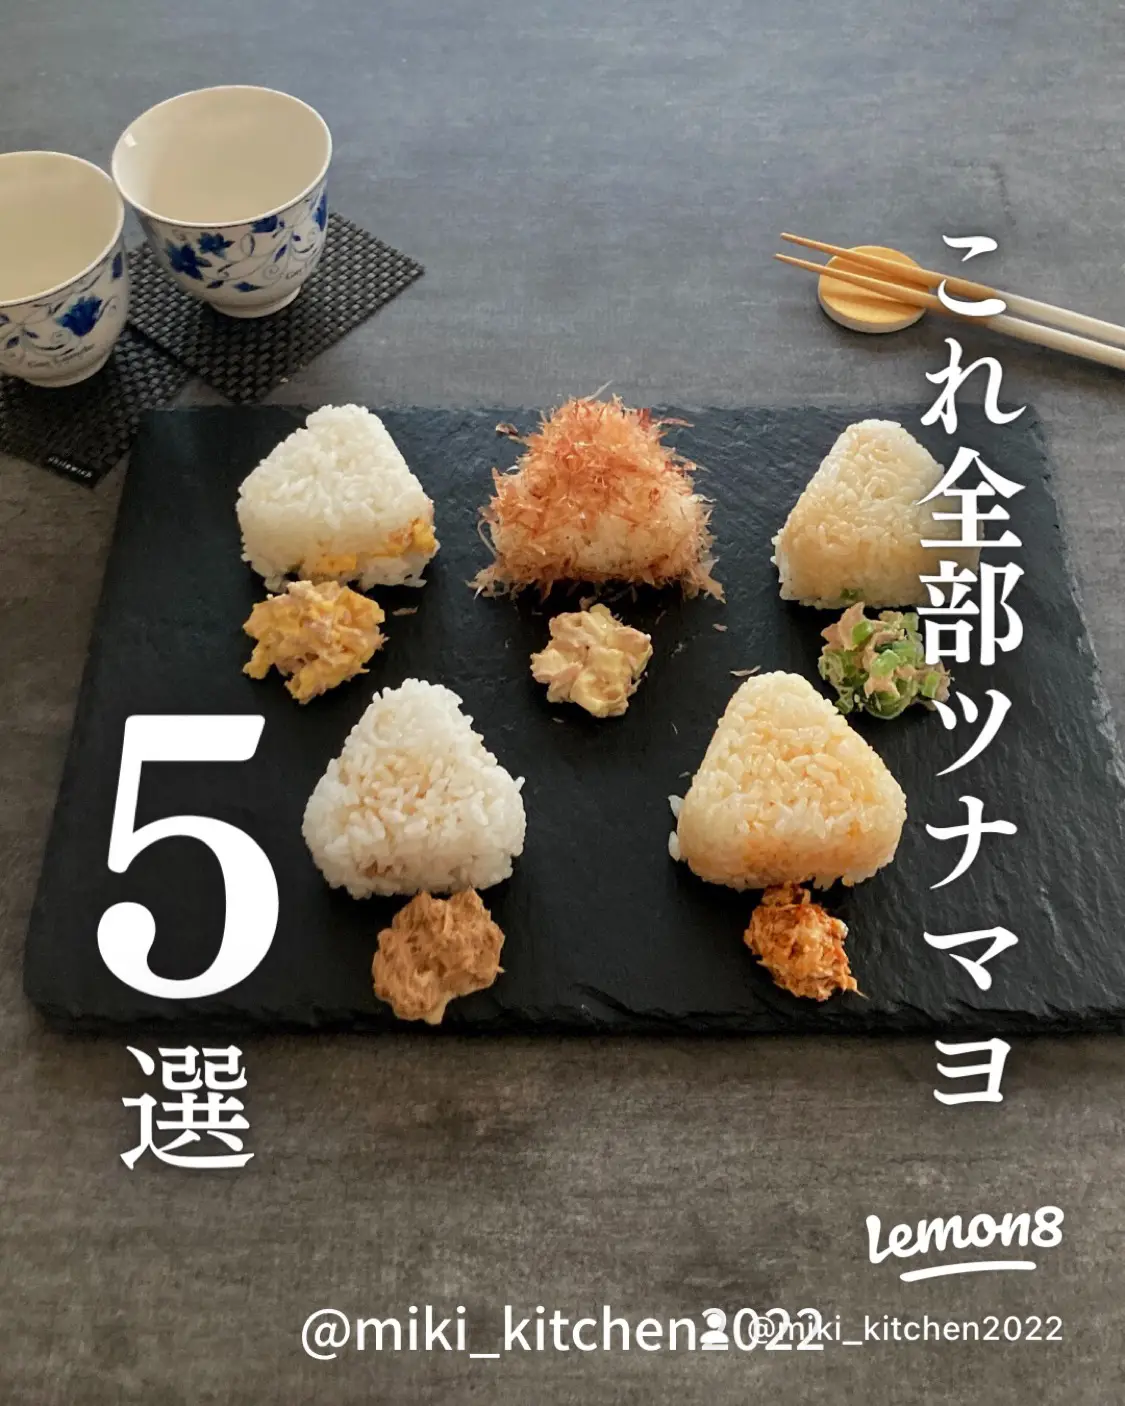 チツナカ - Lemon8検索